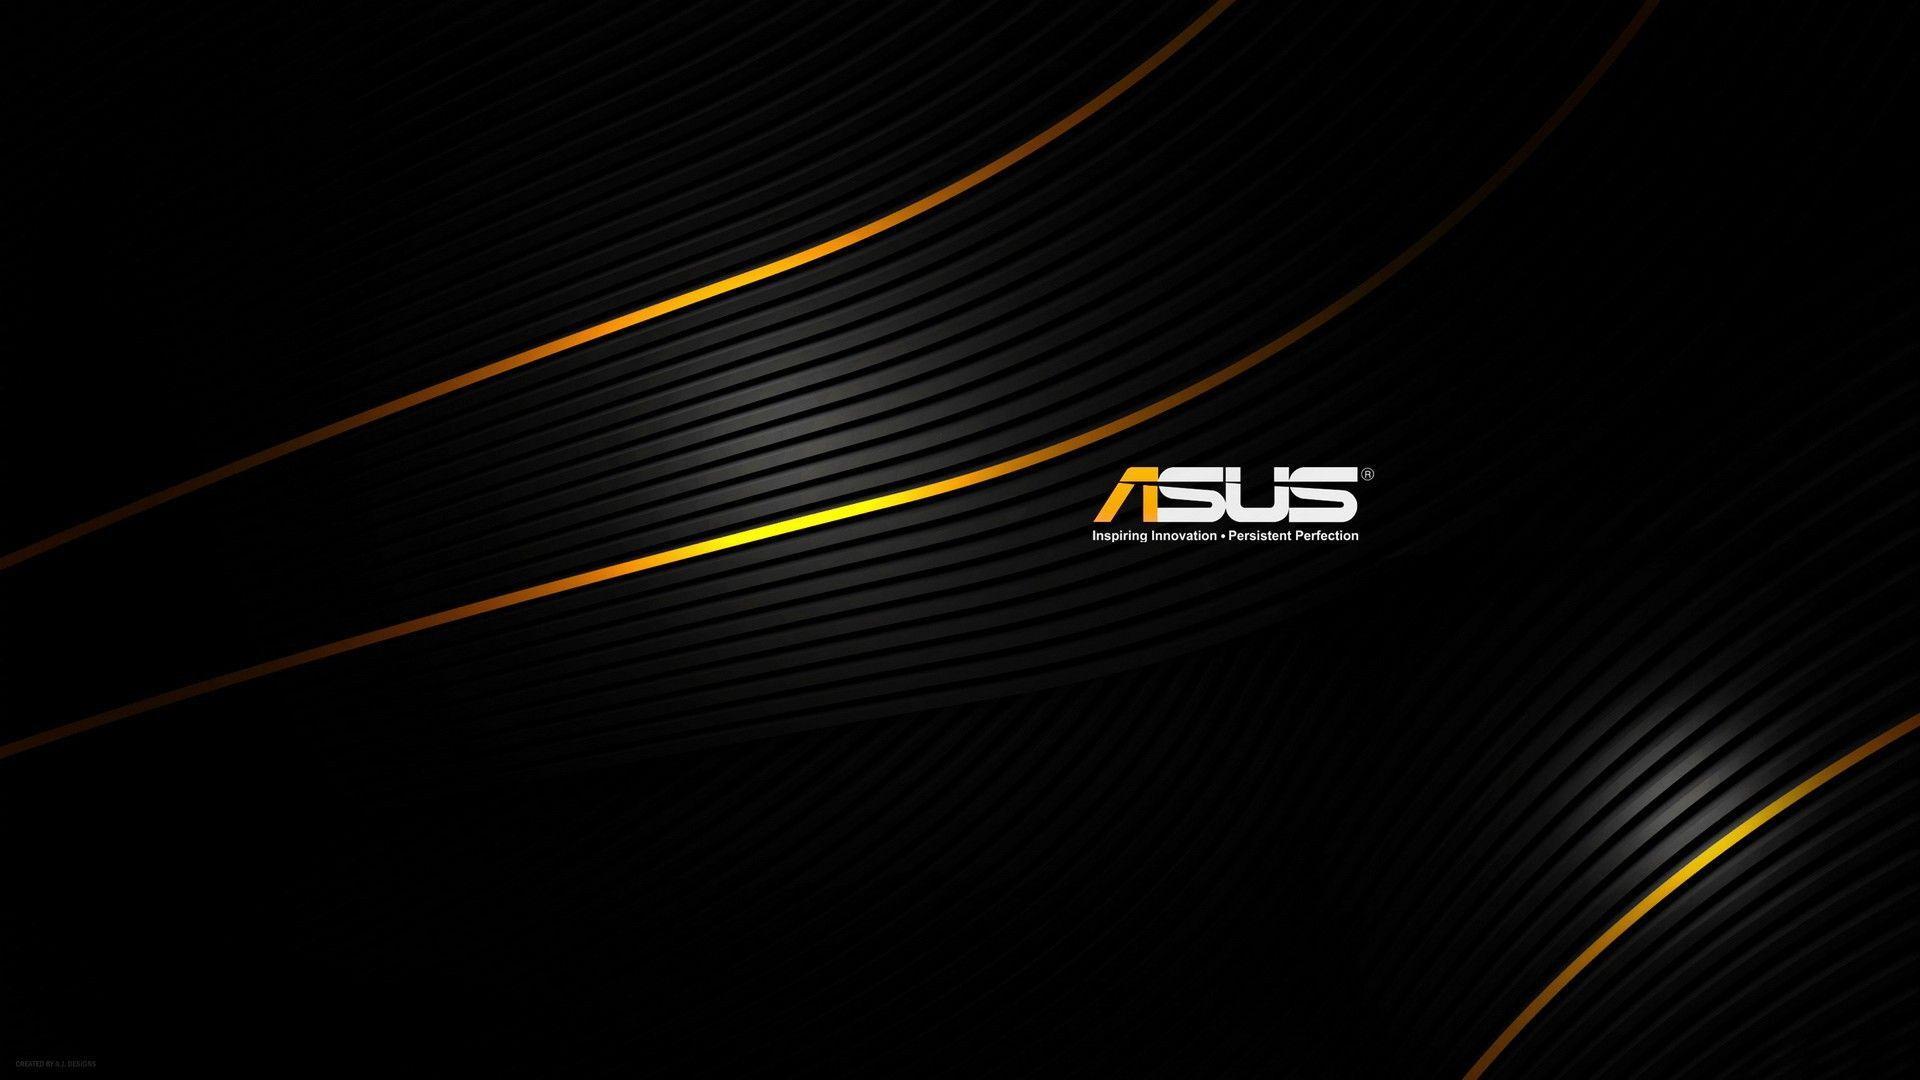 Asus 1080P Wallpapers - Top Những Hình Ảnh Đẹp